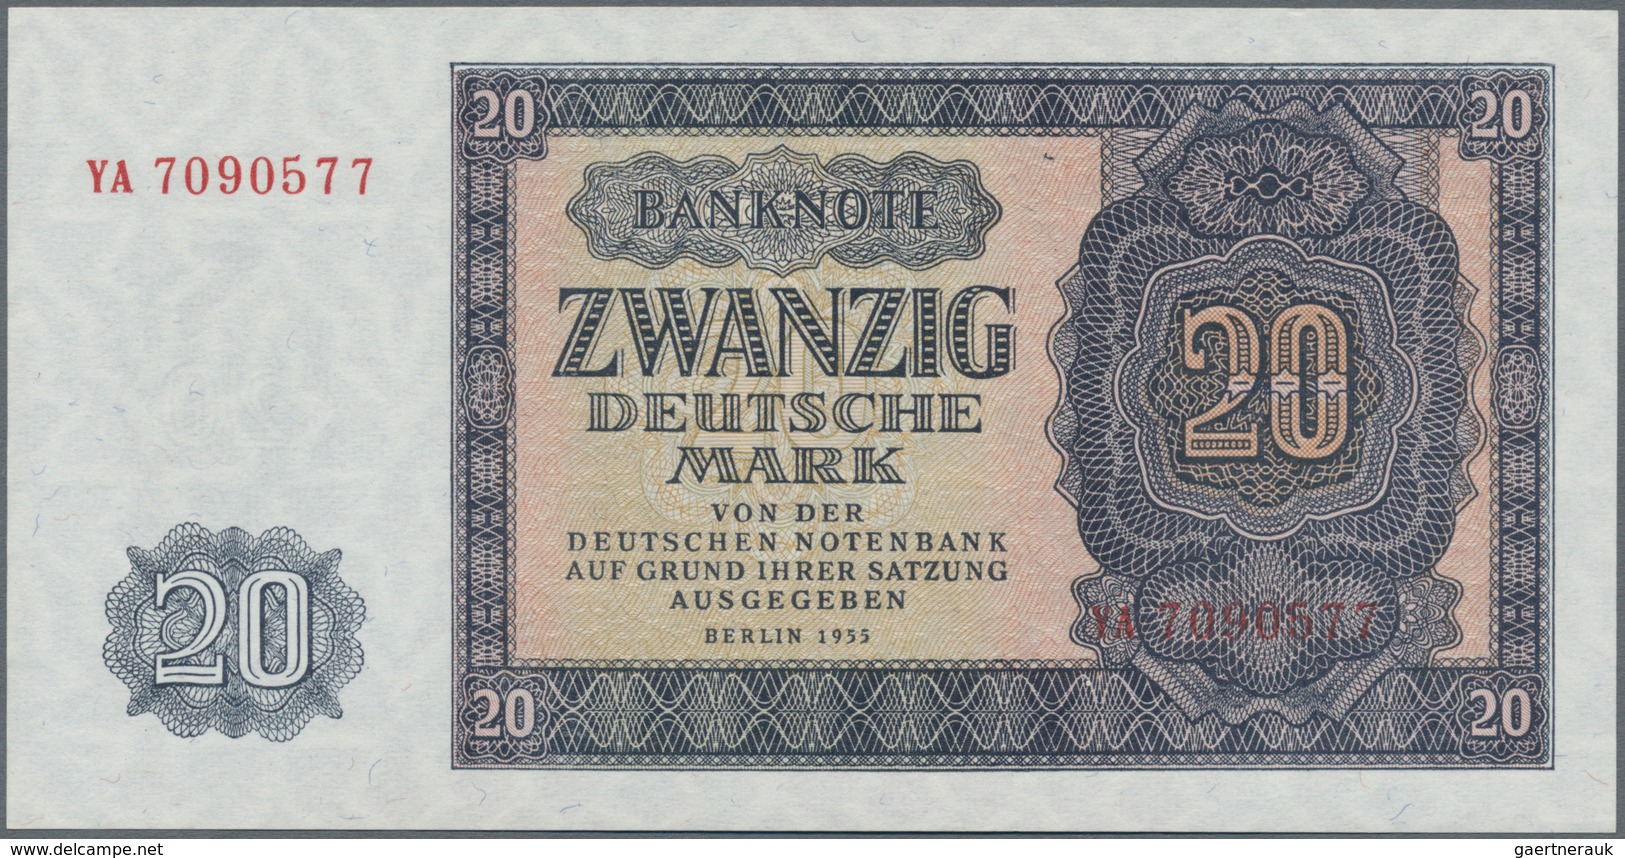 Deutschland - DDR: Sehr schönes Lot mit 9 Banknoten, dabei 10 Mark 1948 mit Klebemarke Ro.334c (VF),